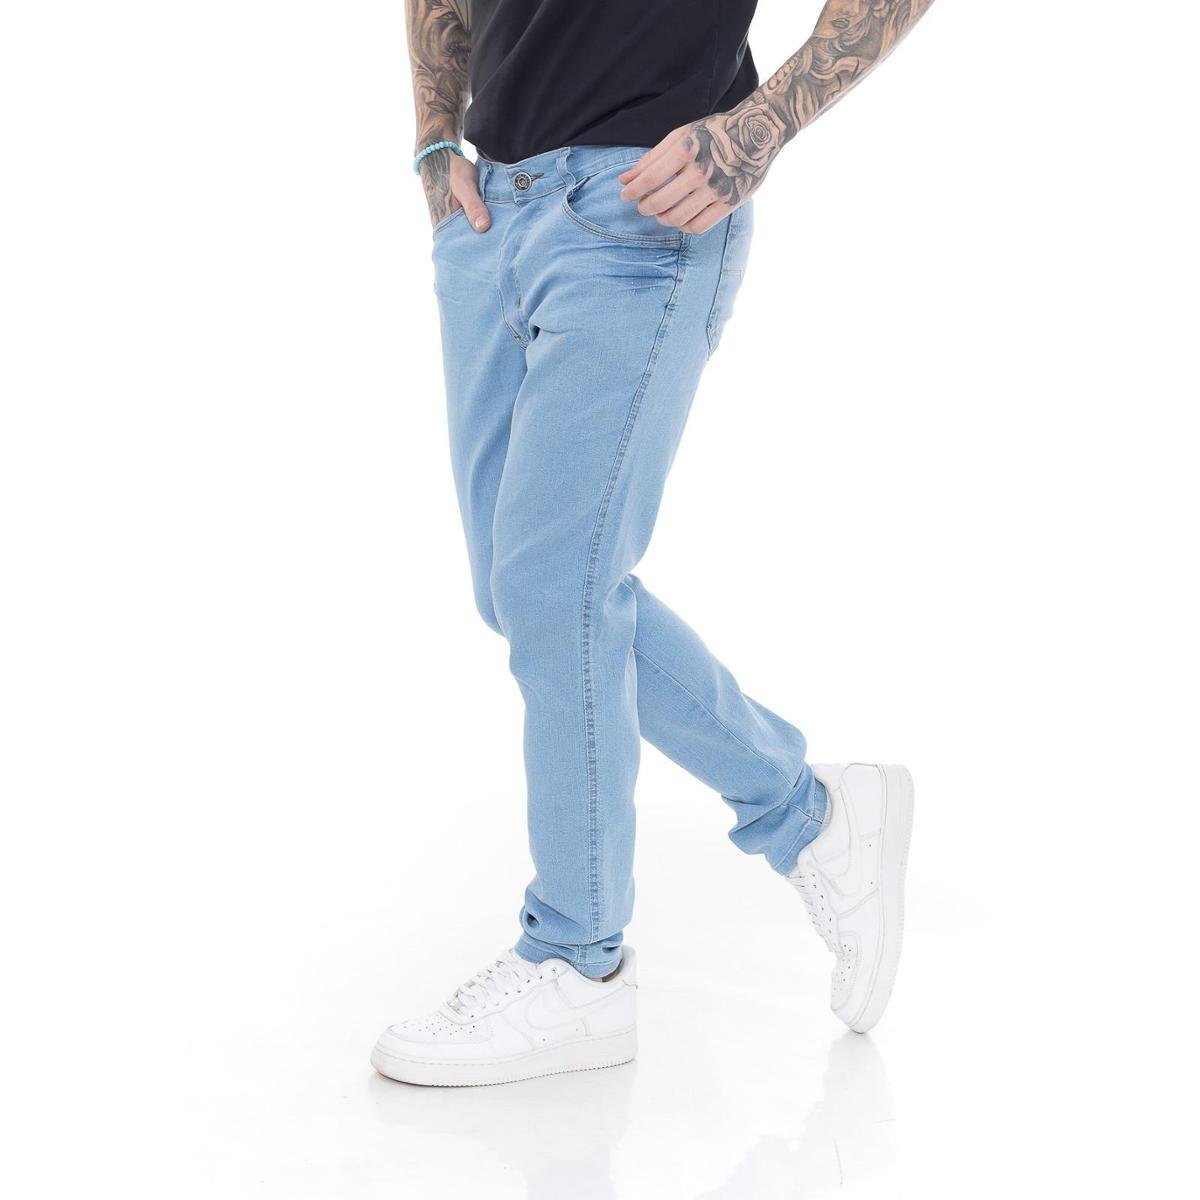 Saindo por R$ 69,9: Lista de Calças Jeans para todos os estilos, por preços acessíveis. Confira links na descrição | Pelando